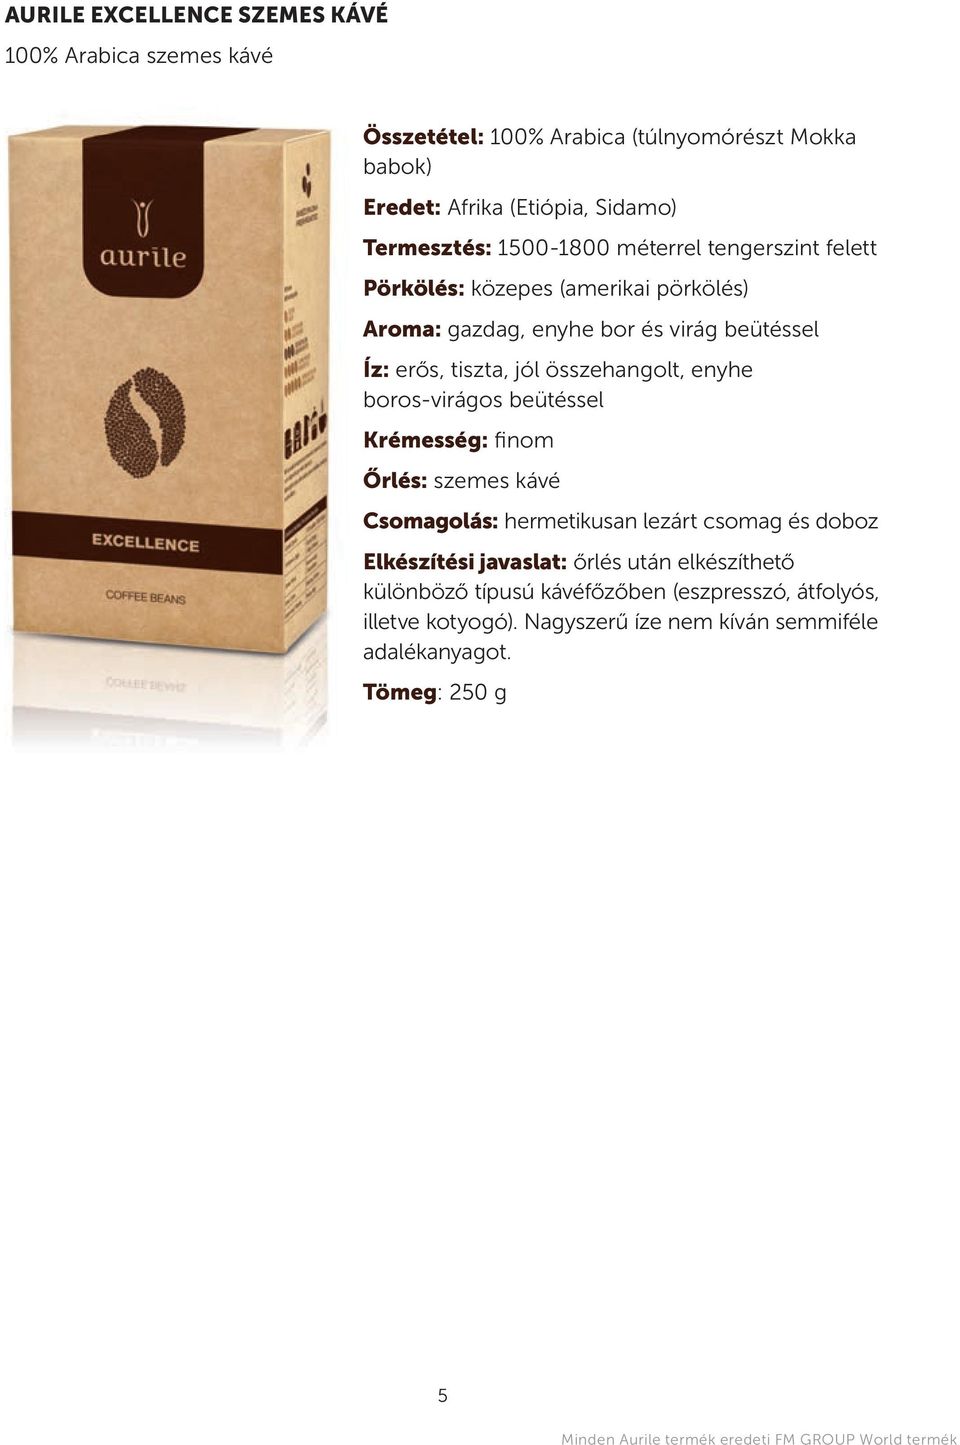 boros-virágos beütéssel krémesség:fi n o m Őrlés: szemes kávé csomagolás: hermetikusan lezárt csomag és doboz elkészítési javaslat: őrlés után elkészíthető